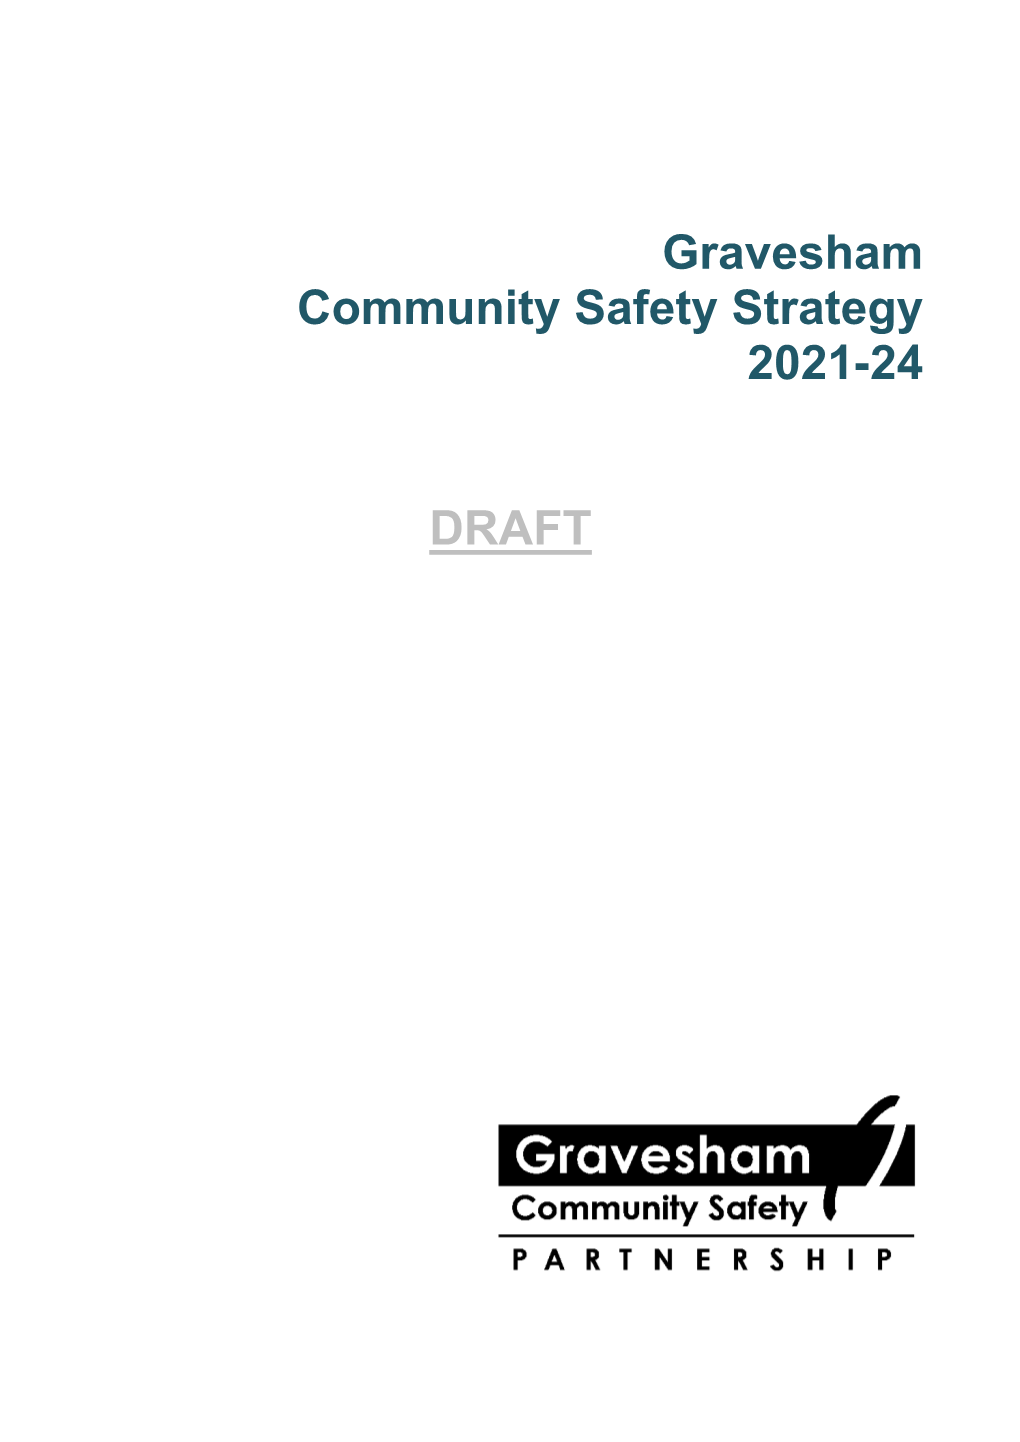 Gravesham Community Safety Strategy Draft , Item 82. PDF 402 KB